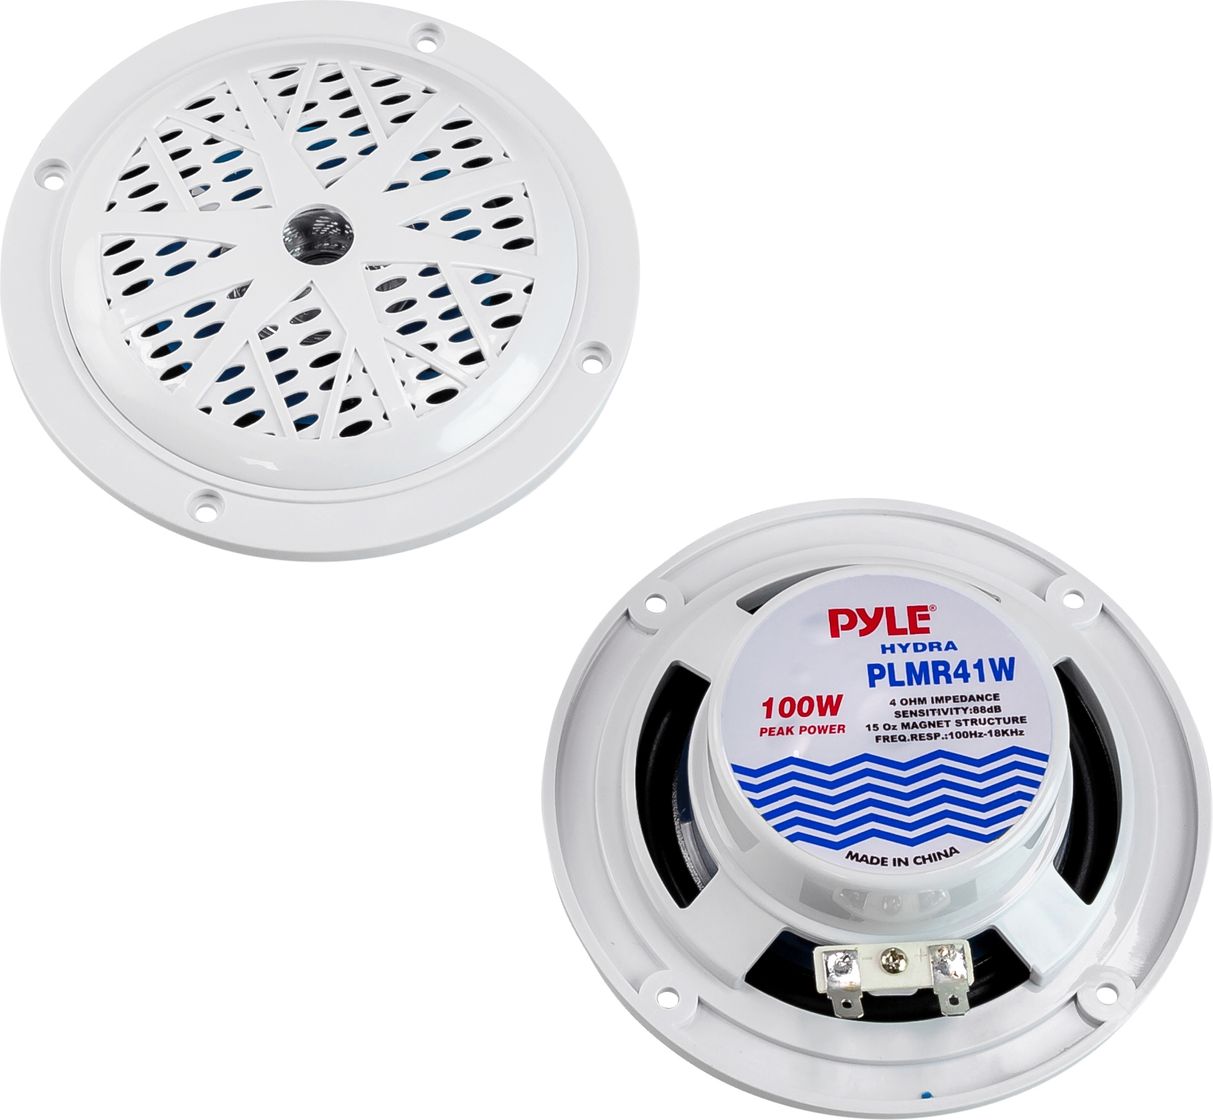 Морская акустика PYLE PLMR41W PLMR41W комплект переналадки на 1 но контурный котел warm